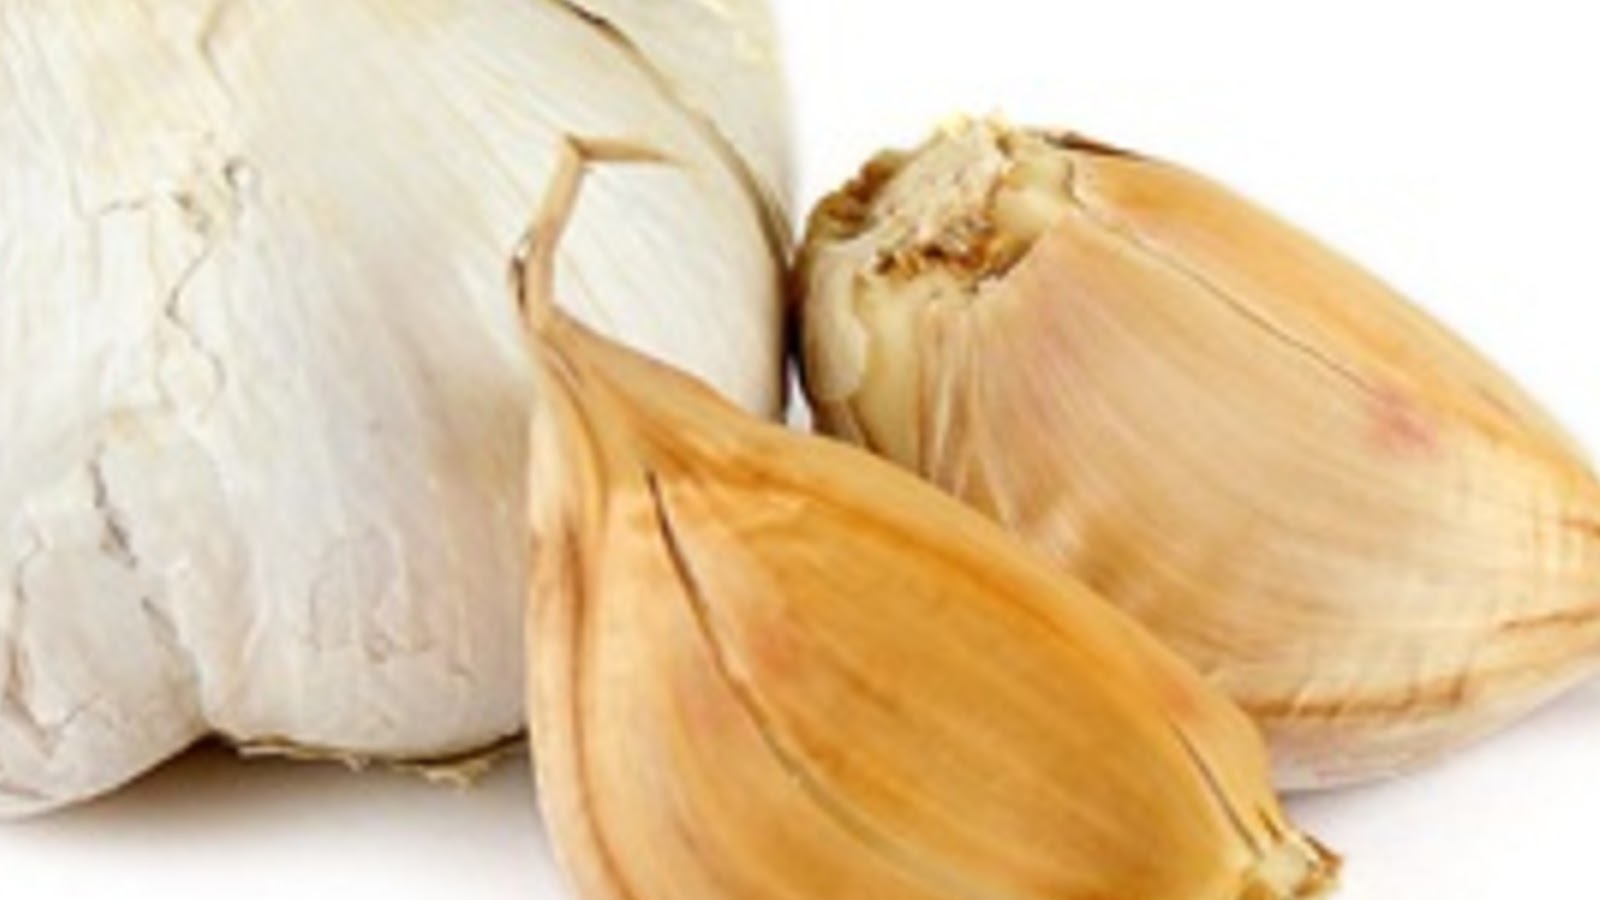 types of garlic